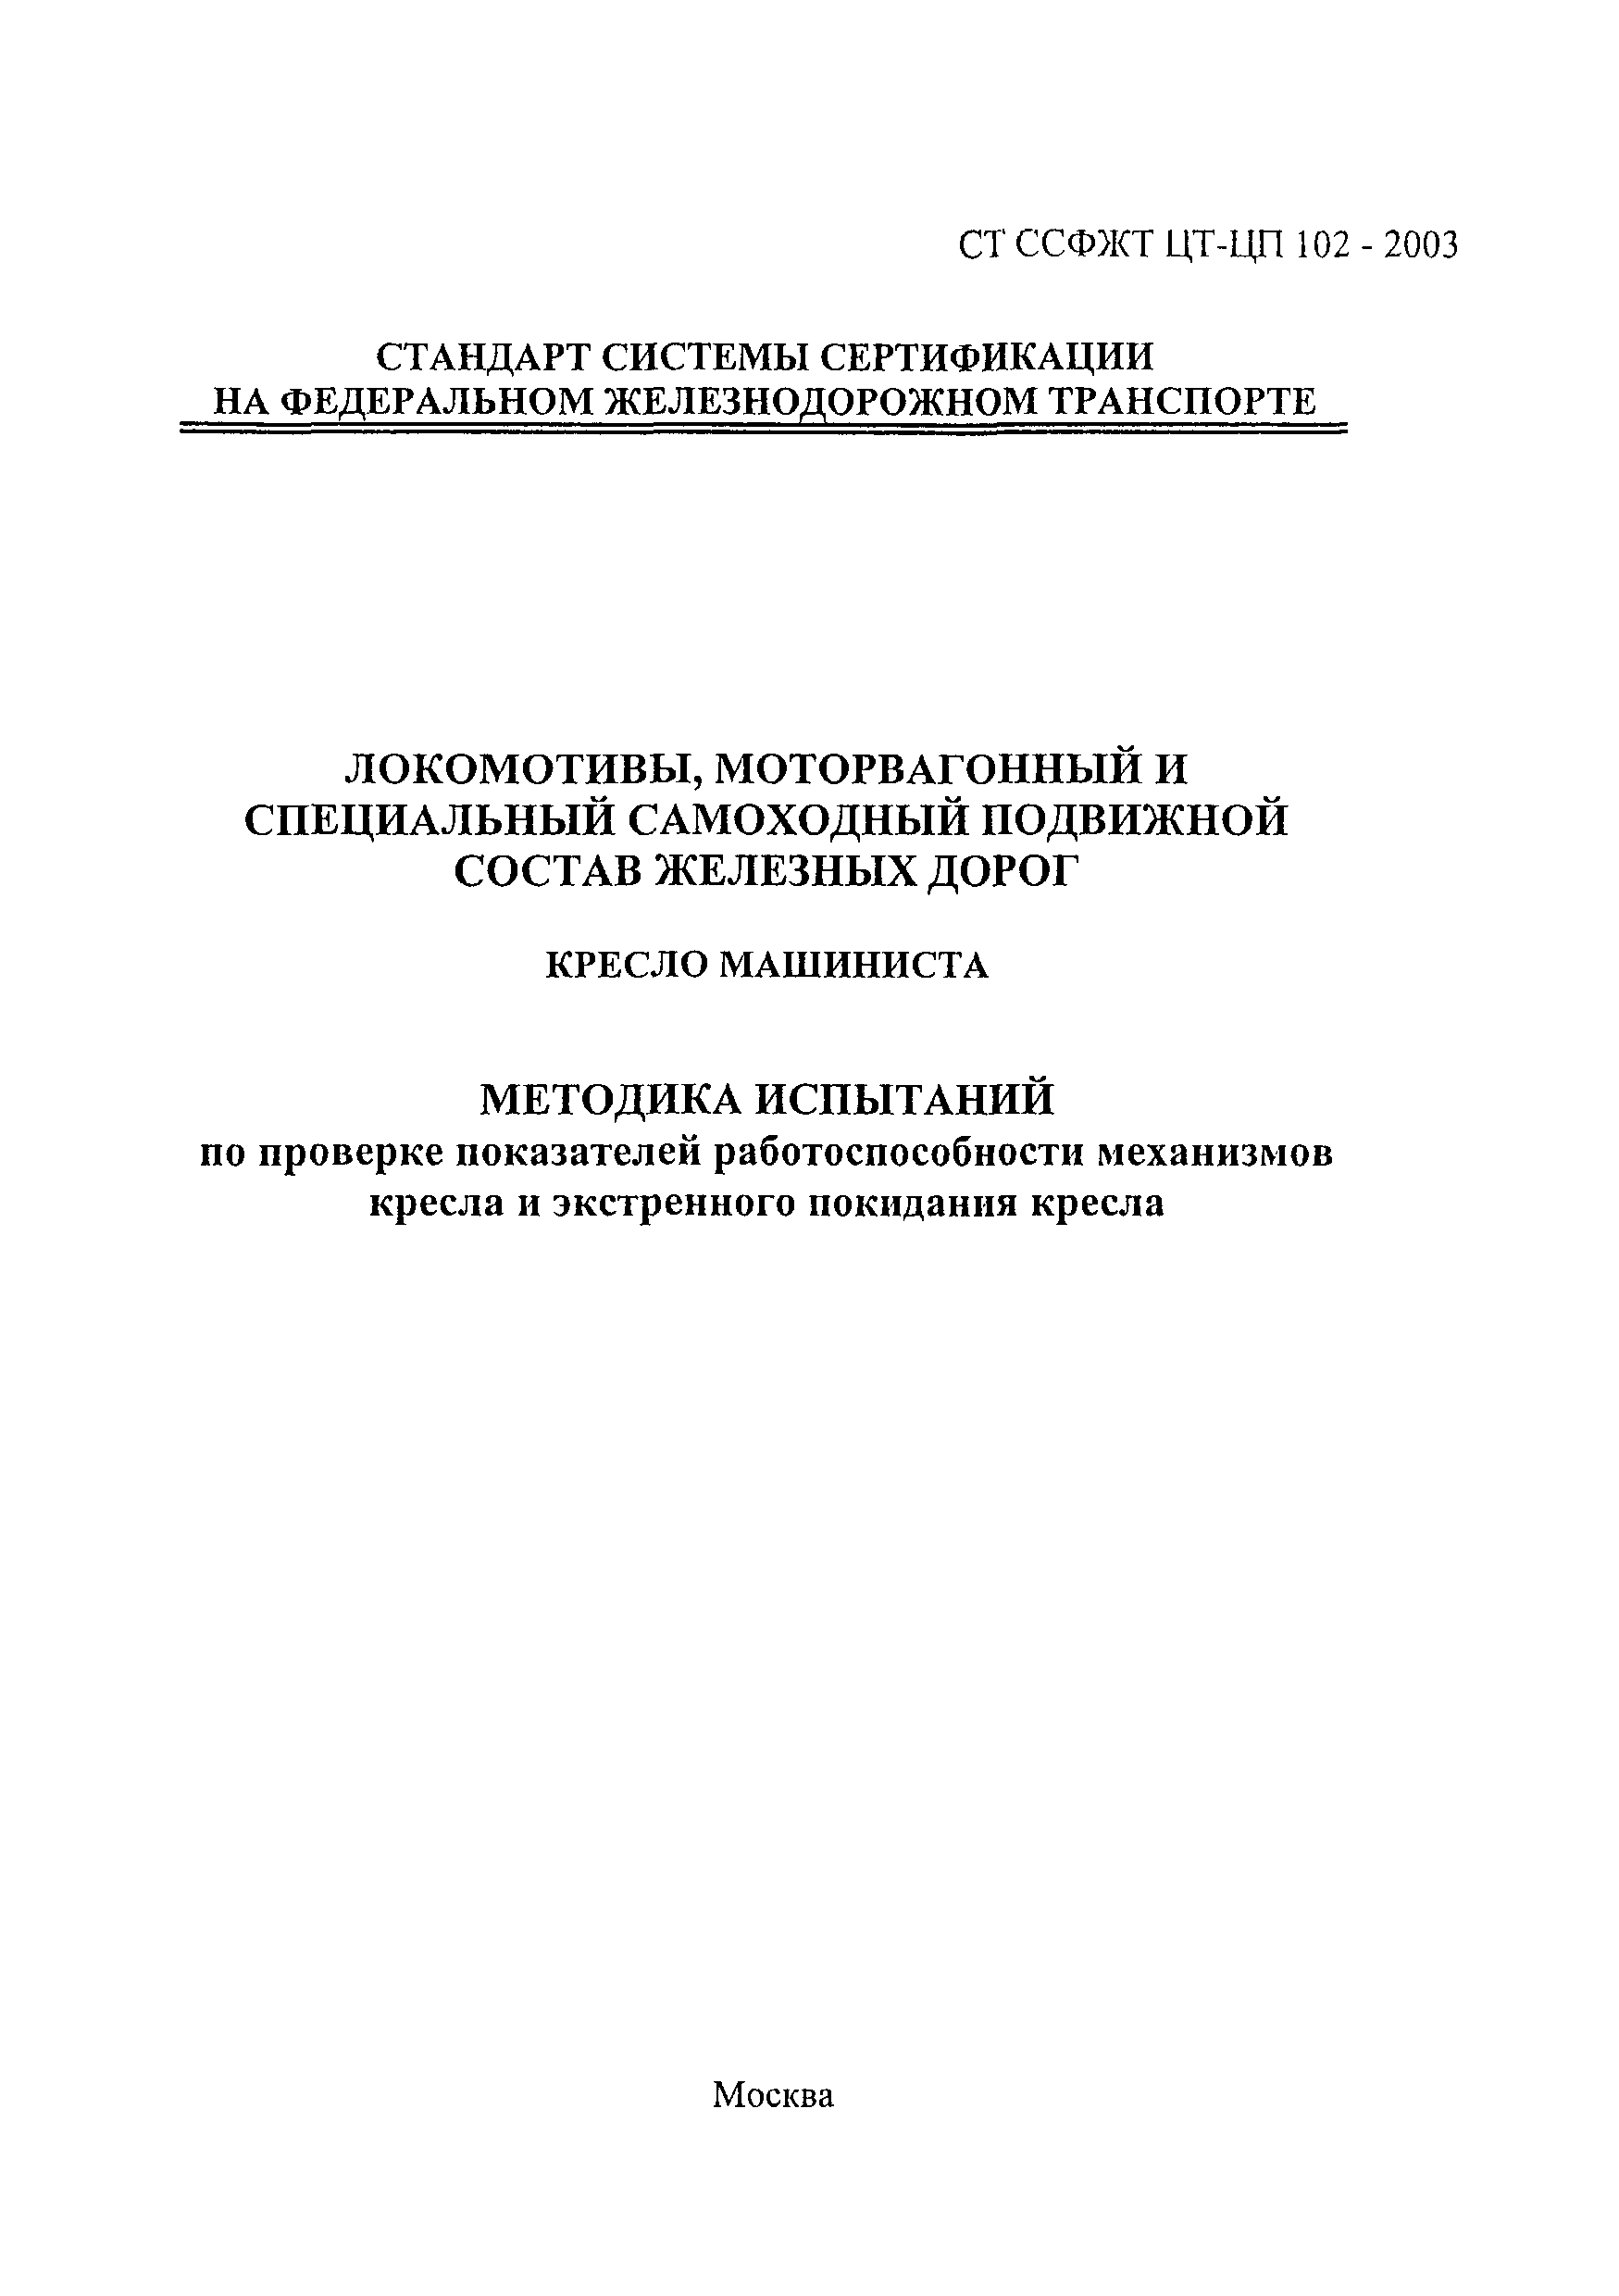 СТ ССФЖТ ЦТ-ЦП 102-2003